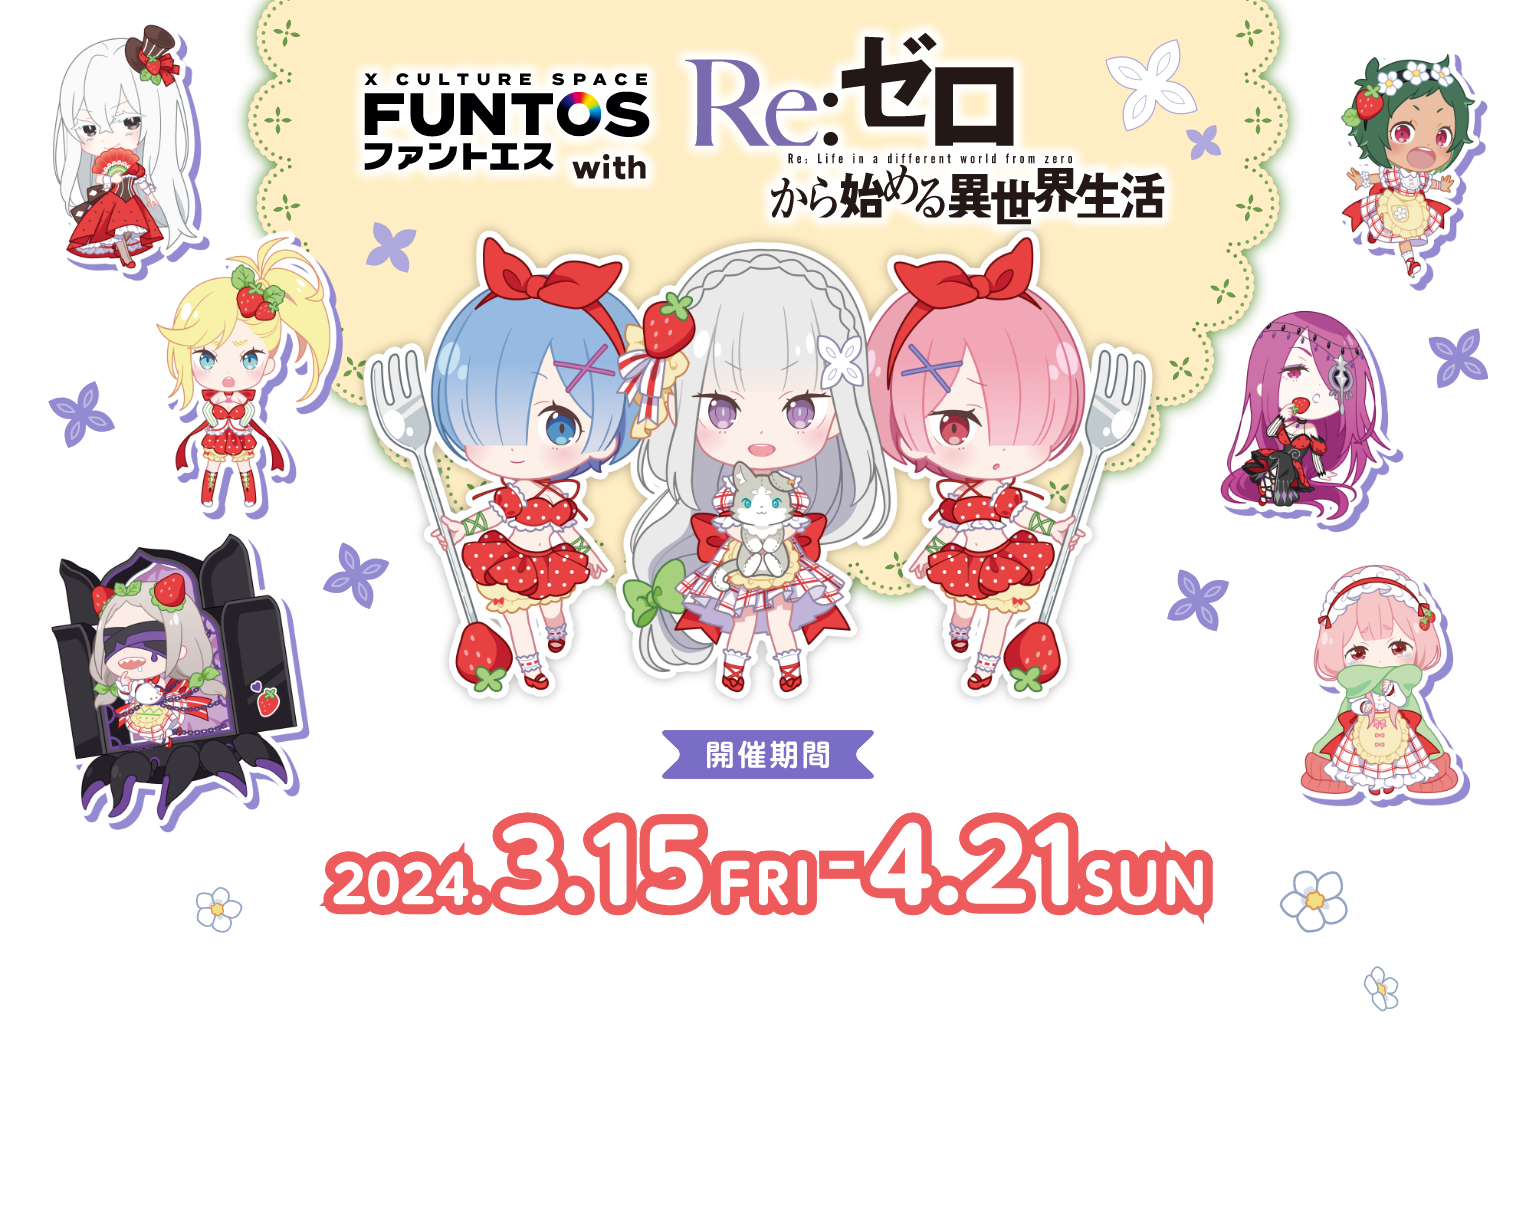 「ファントエス with Re:ゼロから始める異世界生活」開催期間 2024.3.15 FRI - 2024.4.21 SUN